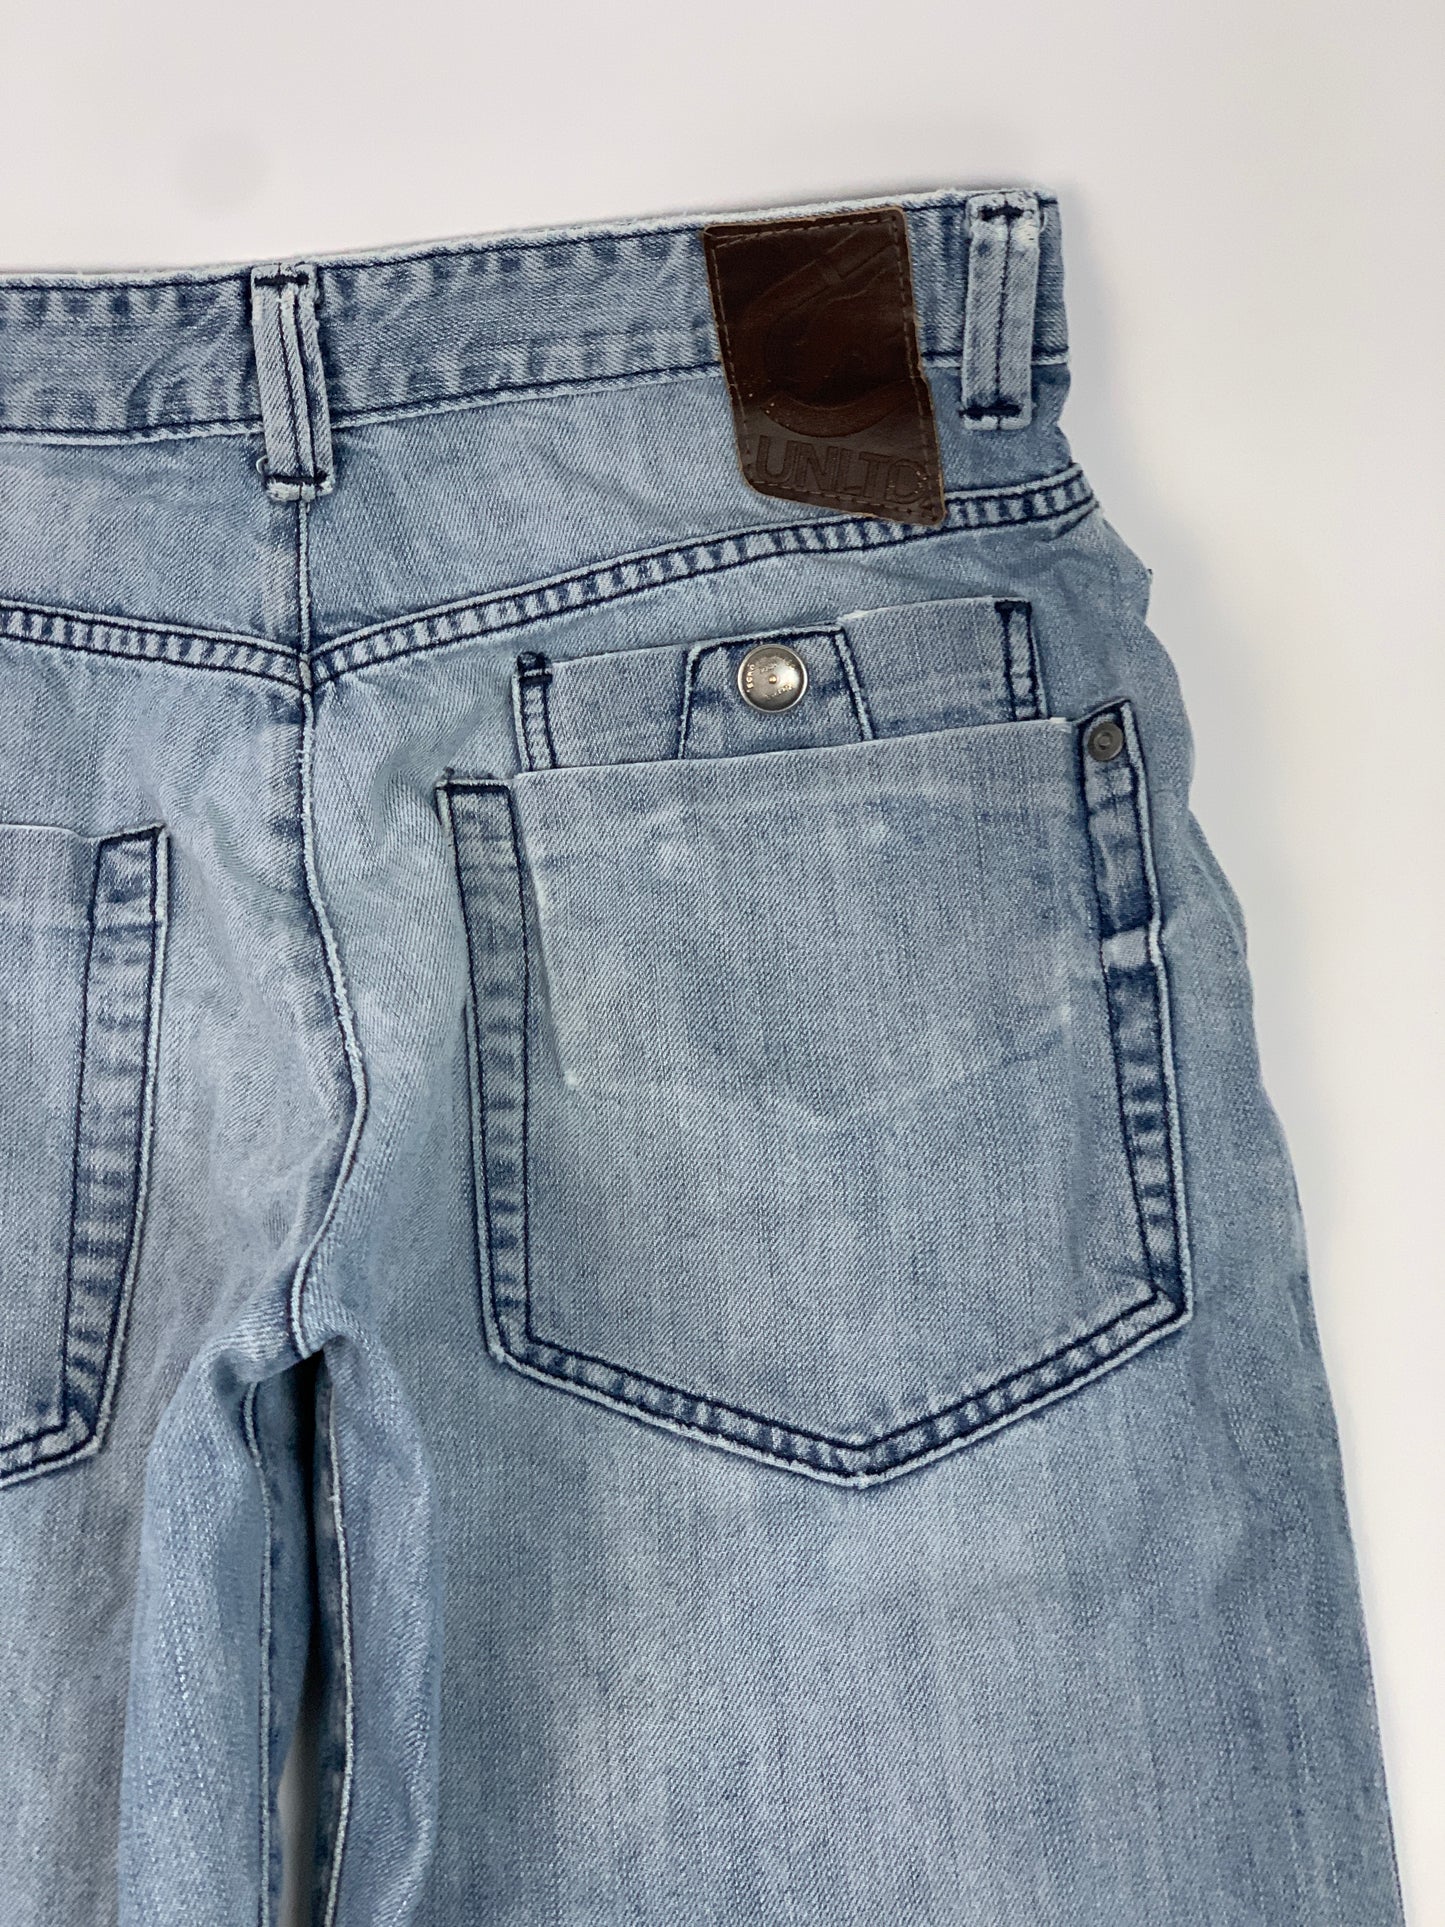 Ecko Untld Vintage Y2K Jeans - 34